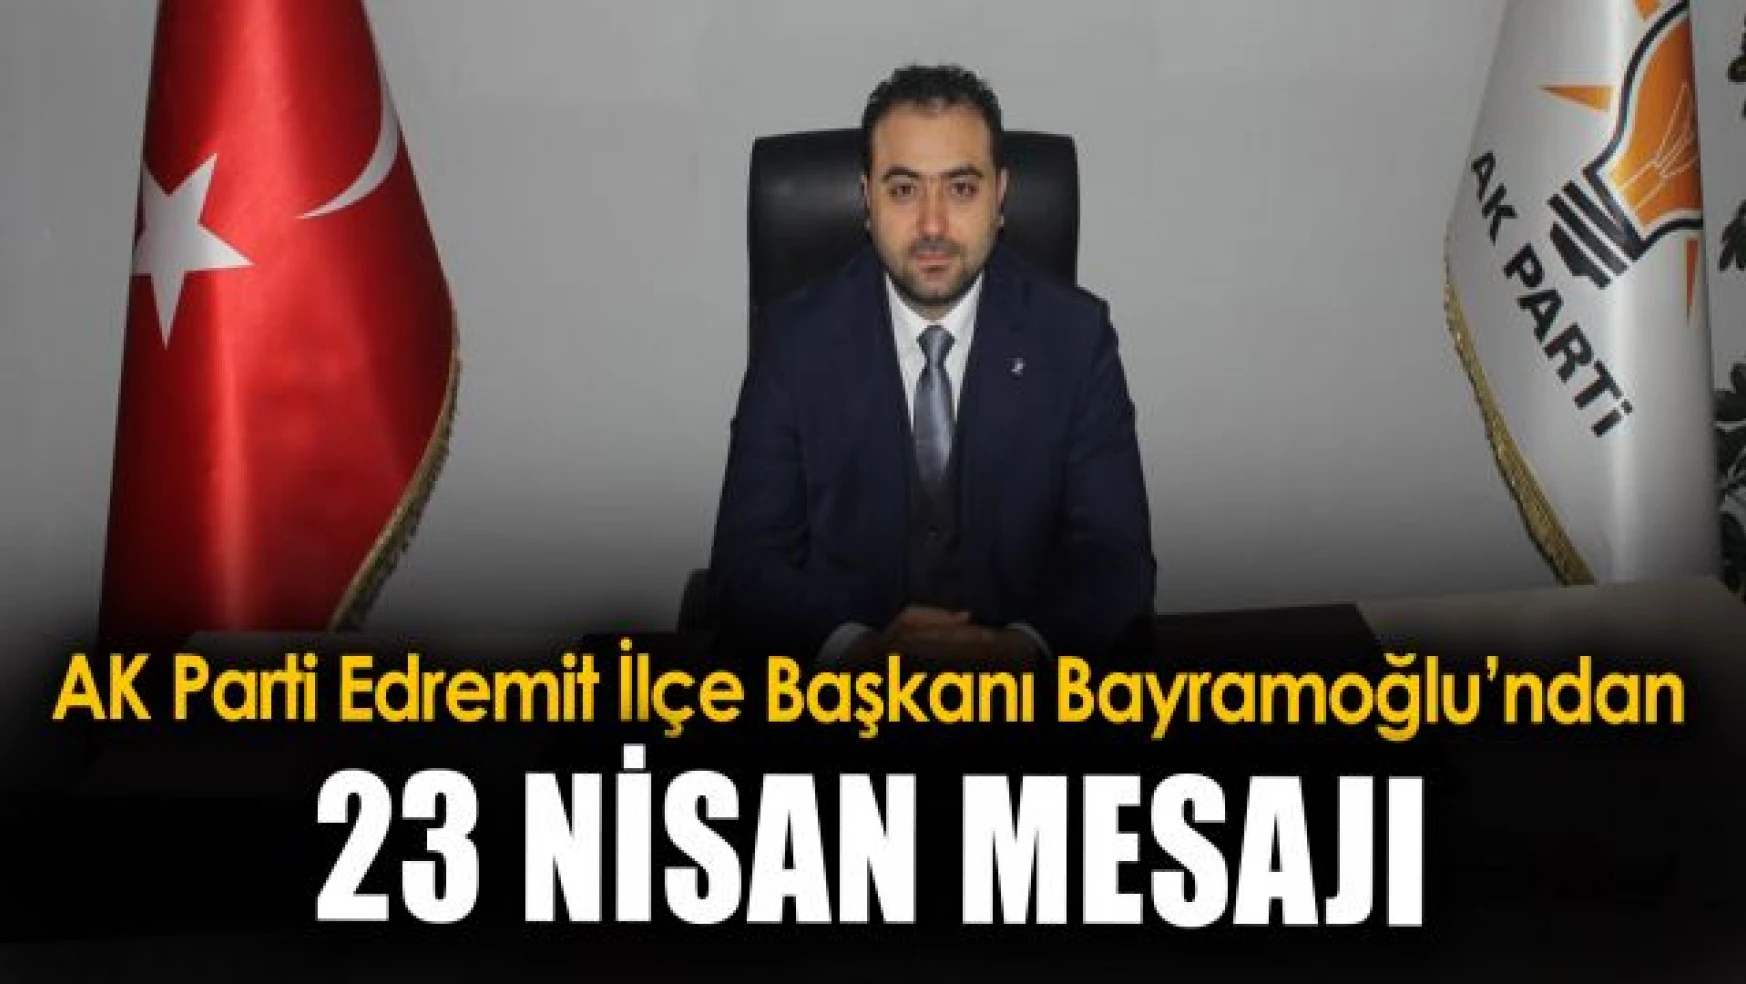 AK Parti Edremit İlçe Başkanı Sezer Bayramoğlu'ndan 23 Nisan mesajı